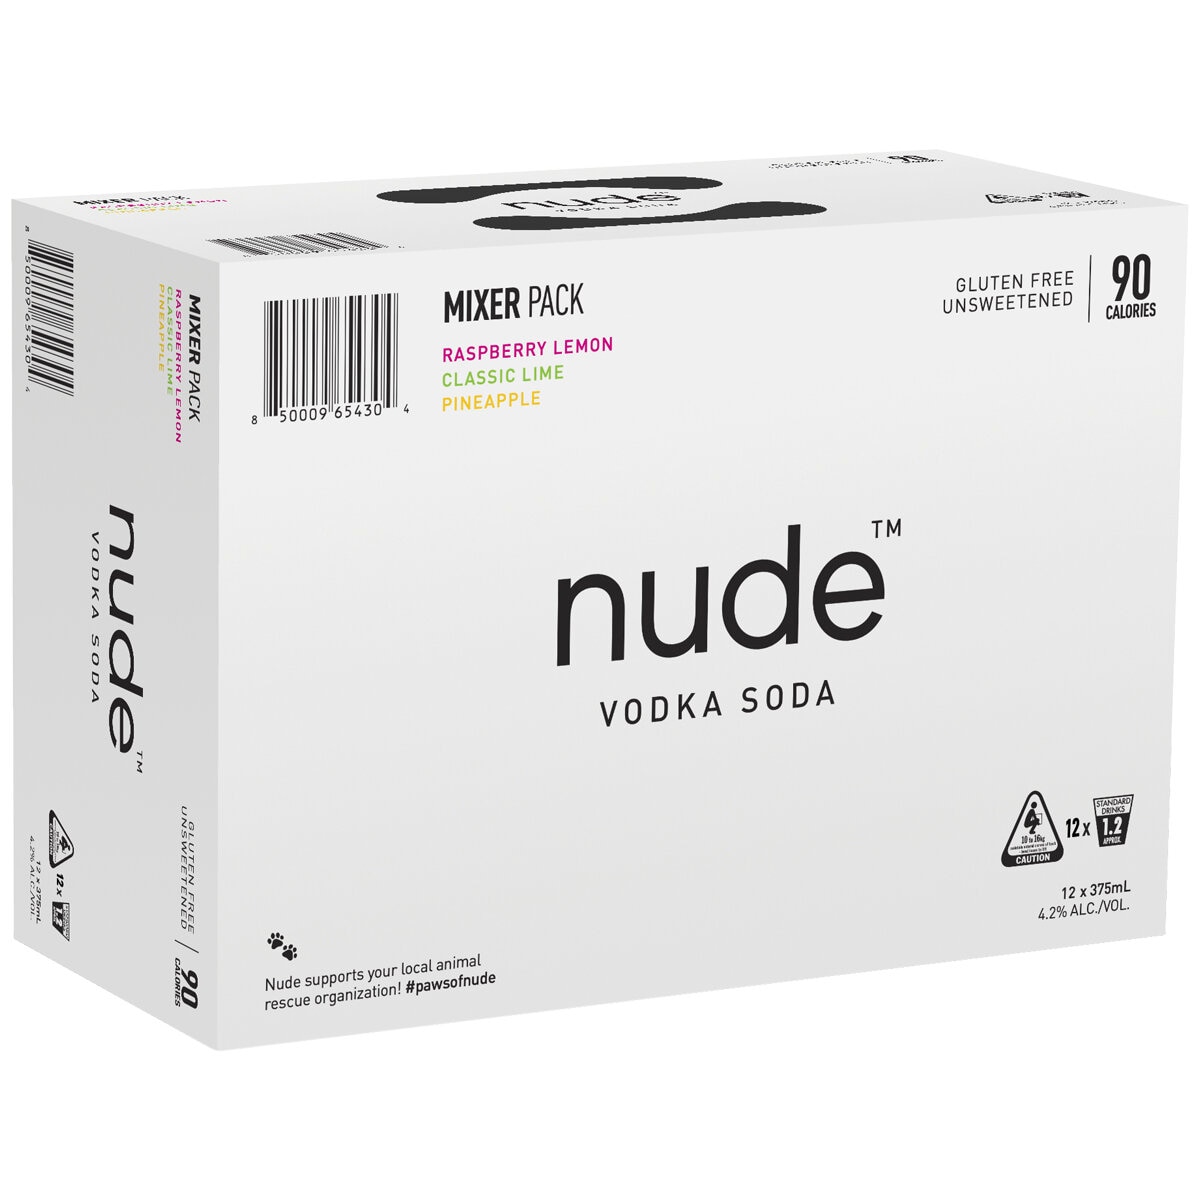 Nude Vodka Soda Mixer Pack X Ml Costco Australia